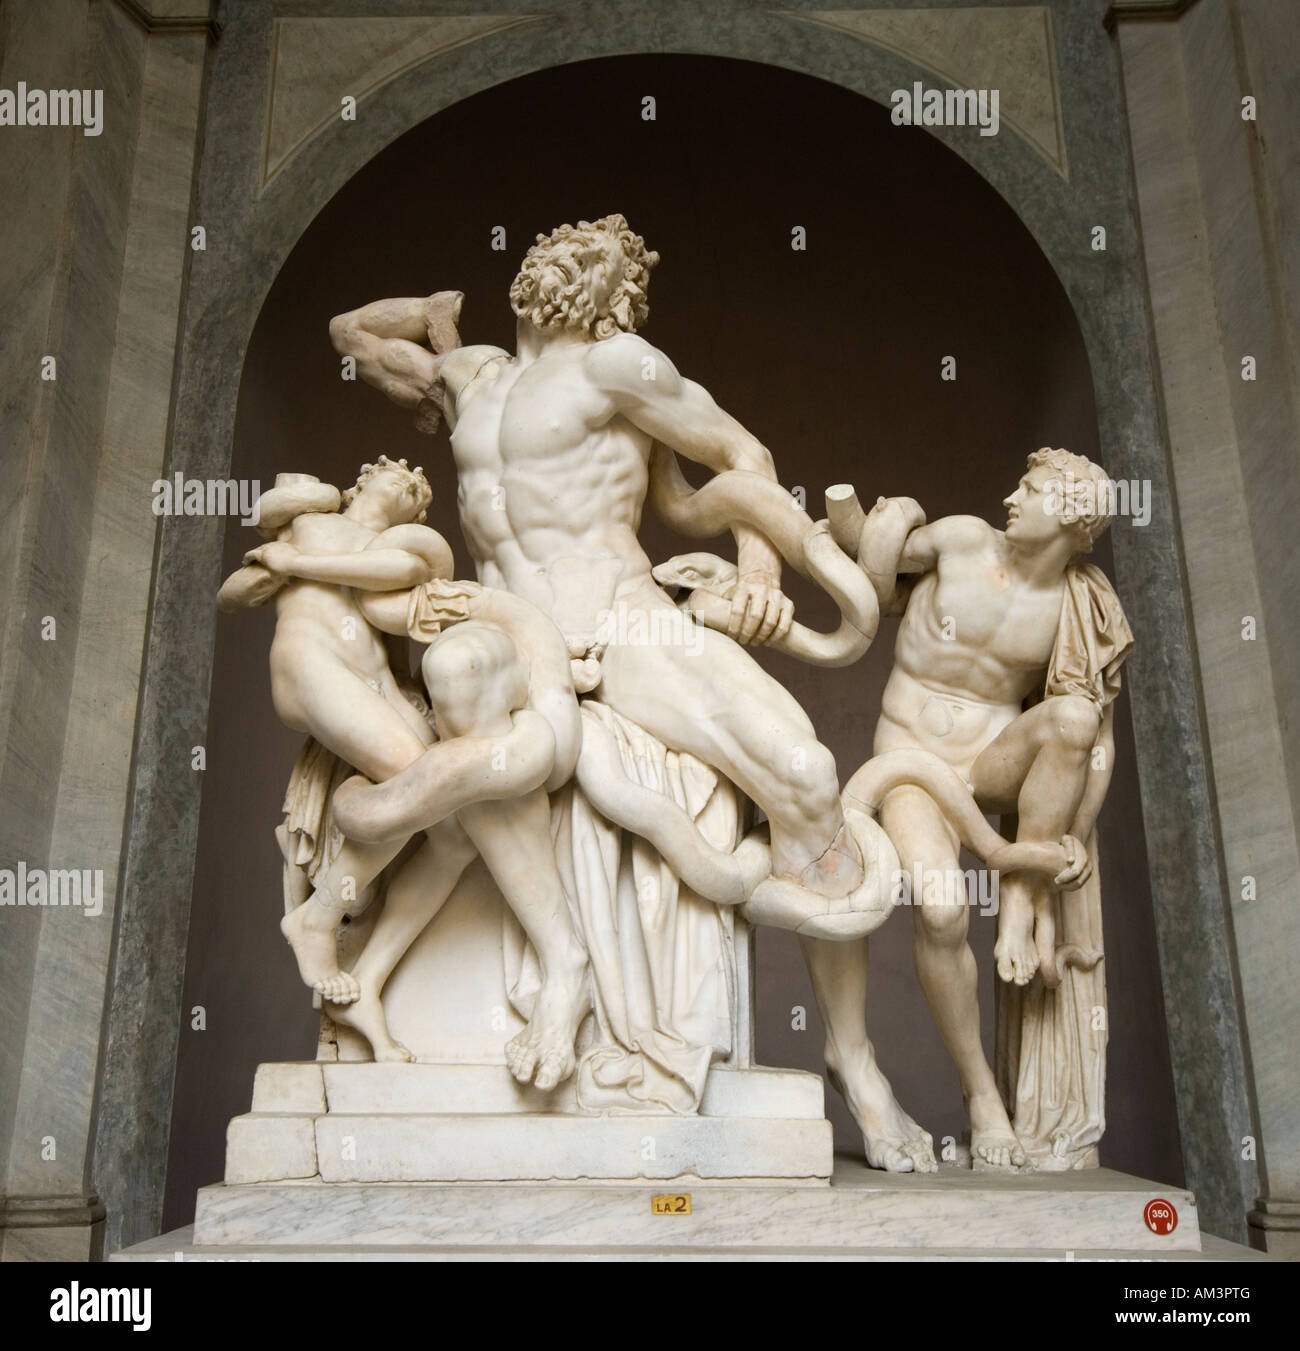 El grupo de Laocoonte por siglo 1 Rodas es uno de los escultores más notables esculturas en el Museo Vaticano Foto de stock